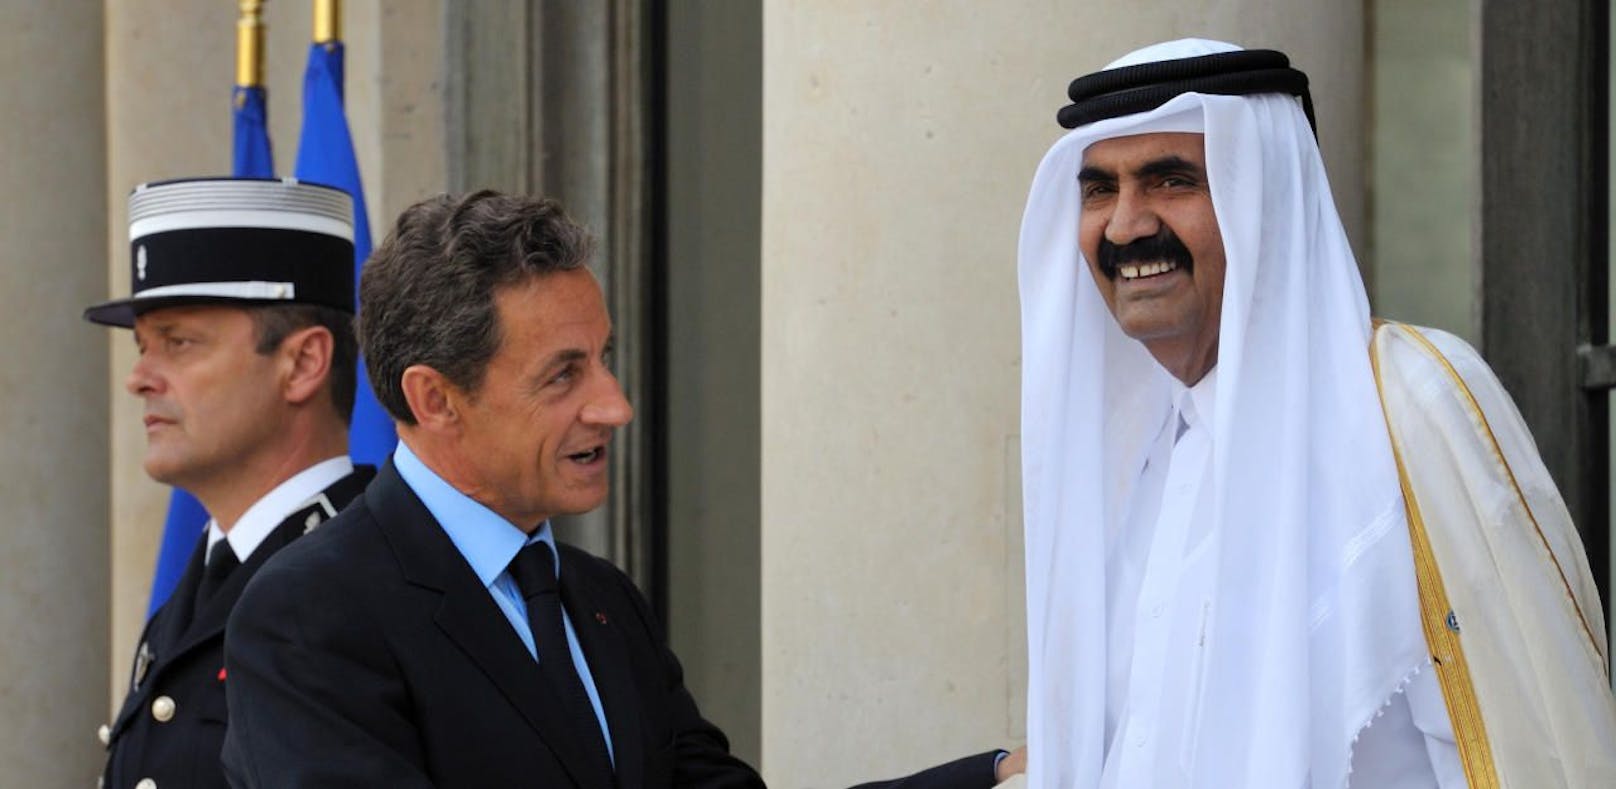 Frankreichs damaliger Präsident Nicolas Sarkozy begrüßt 2011 den Emir von Katar, Scheich Hamad bin Khalifa al-Thani, in Paris.